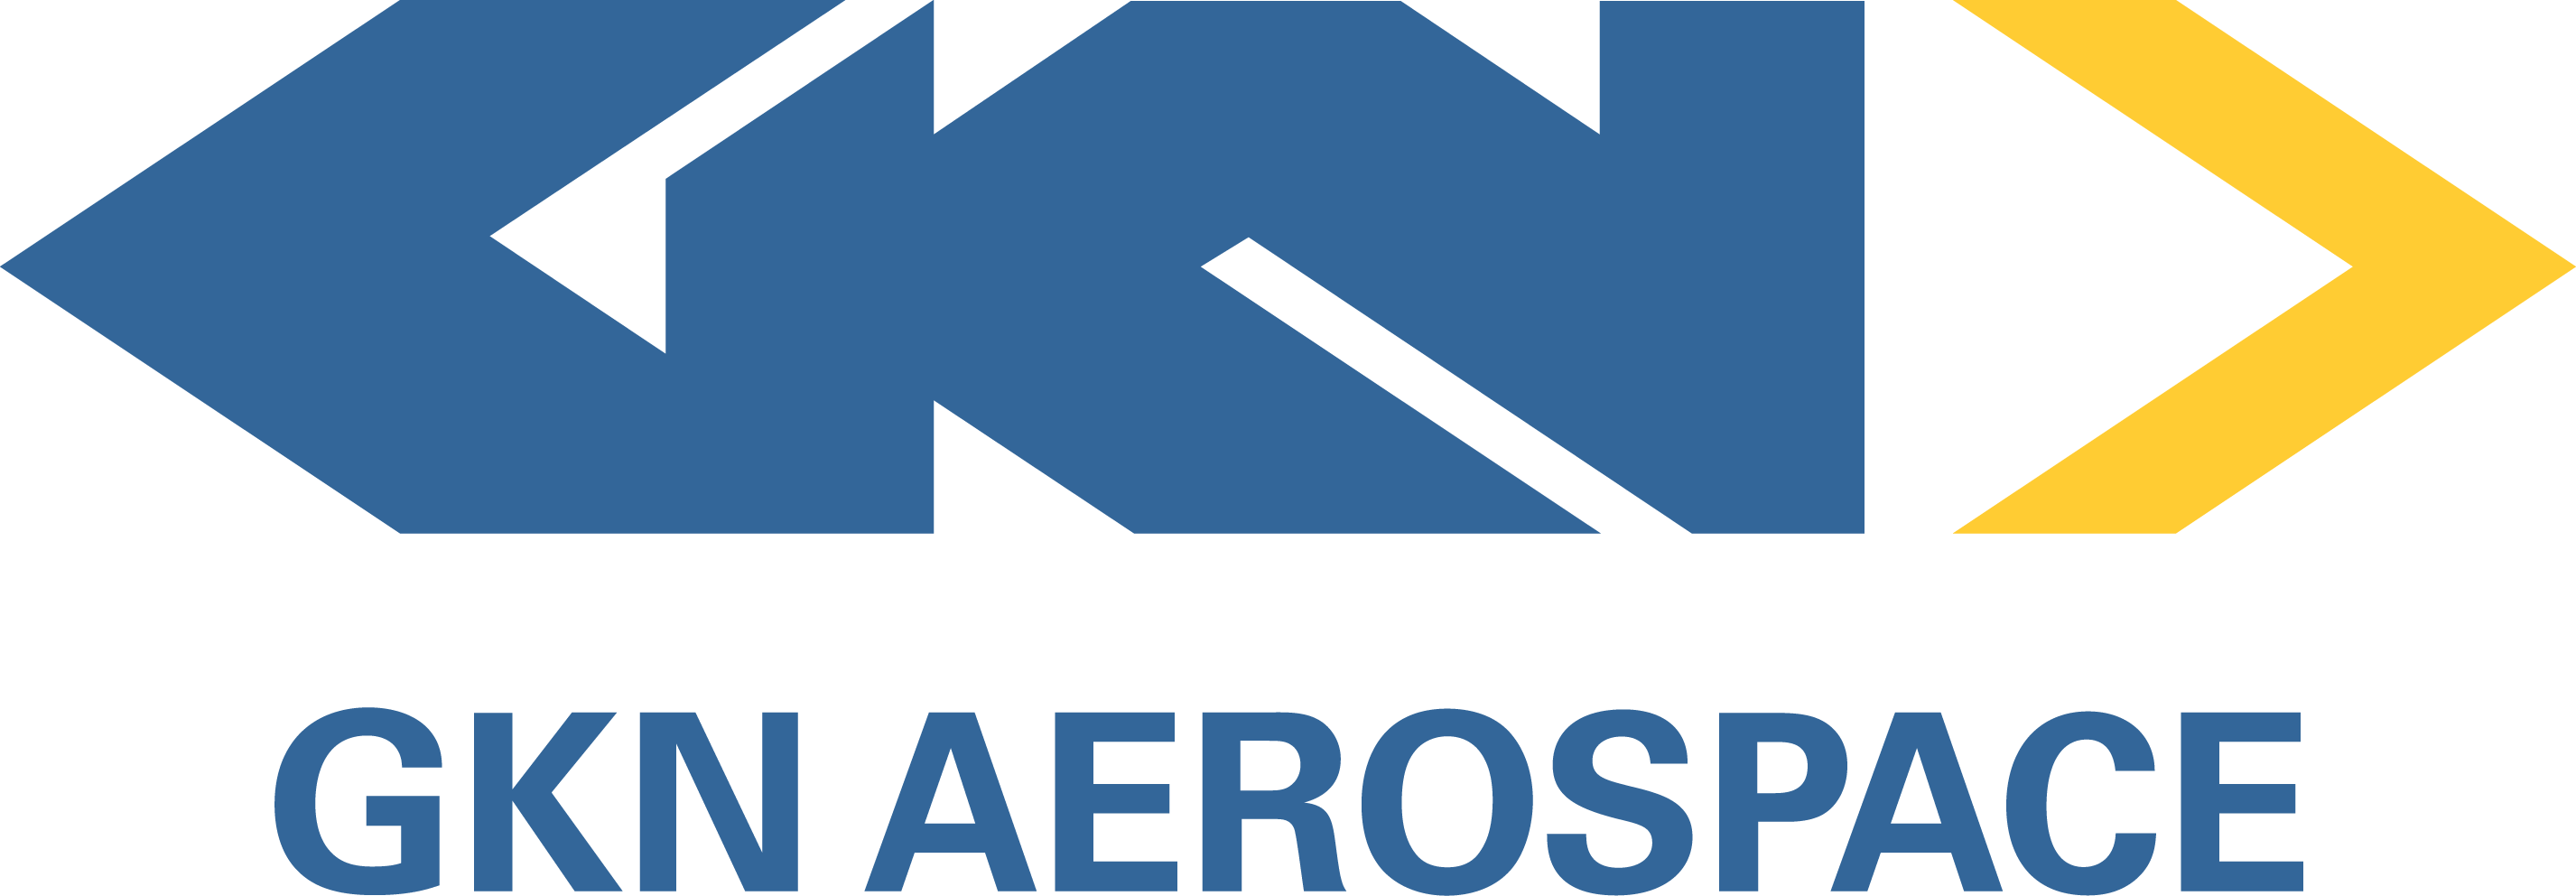 GKN Aerospace - Arkite